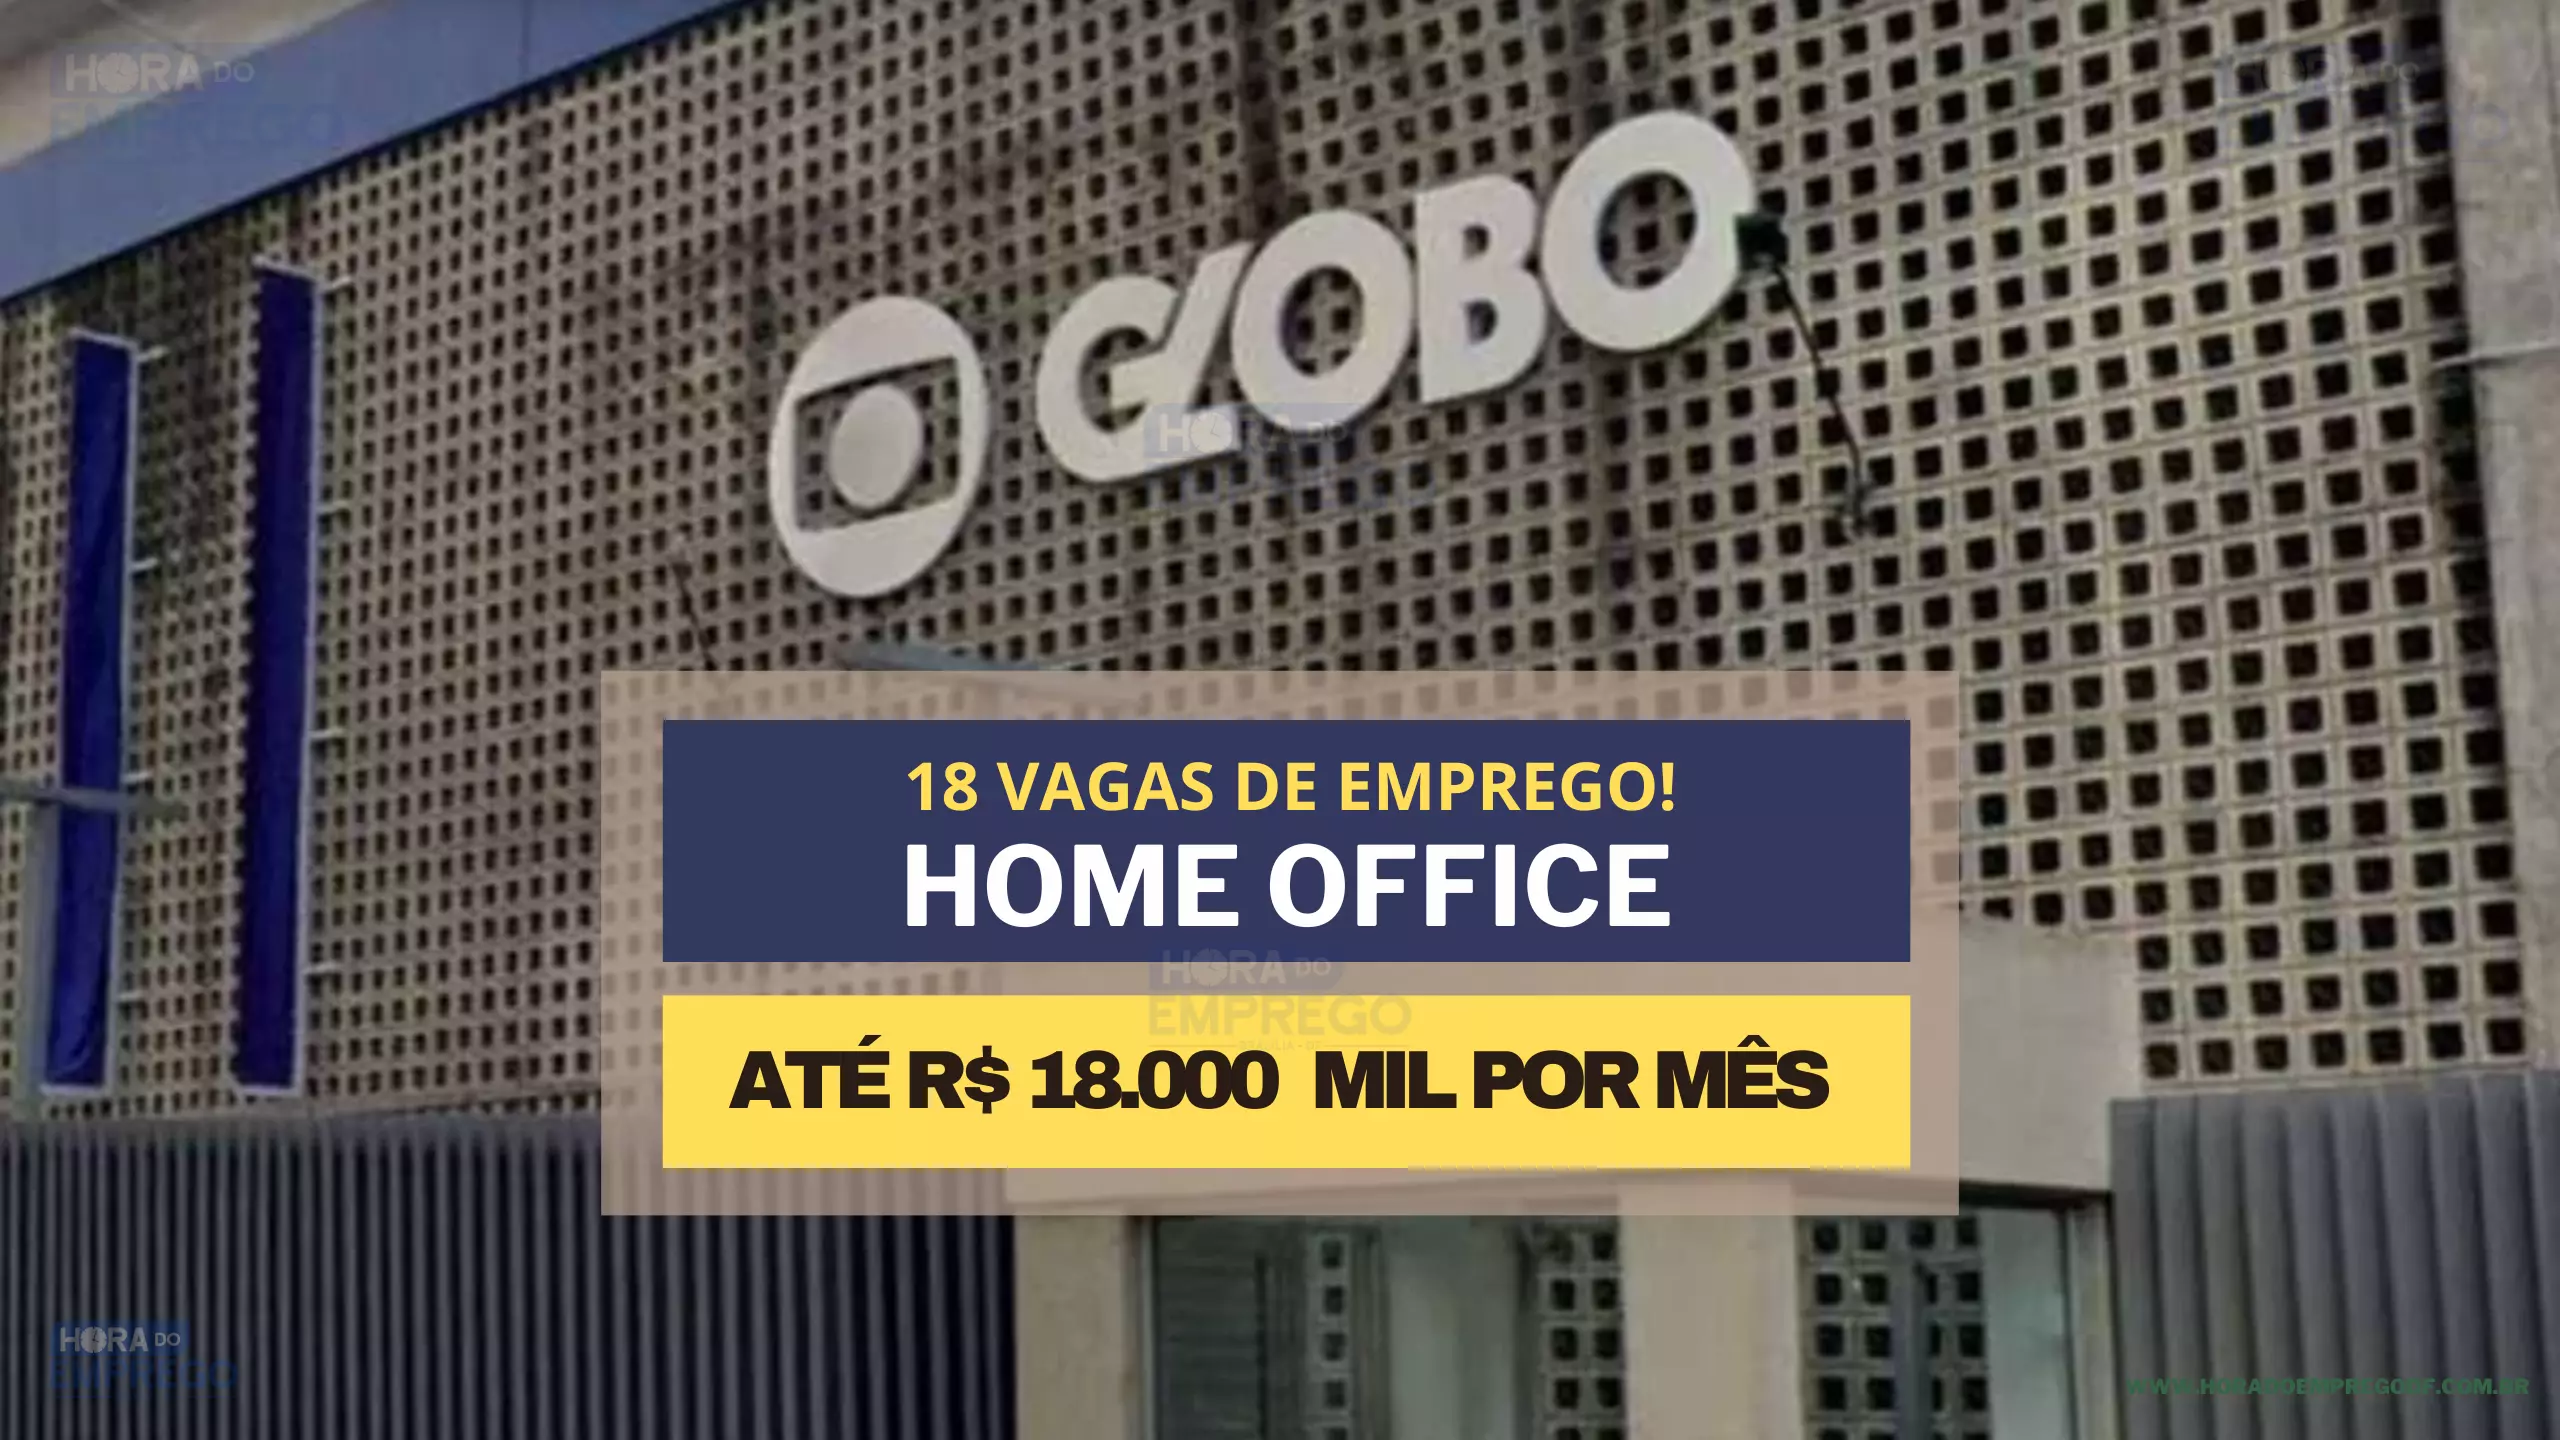 Rede Globo TV anuncia 18 vagas HOME OFFICE para trabalhar de casa com salários que chegam a R$ 18.000 MIL por mês